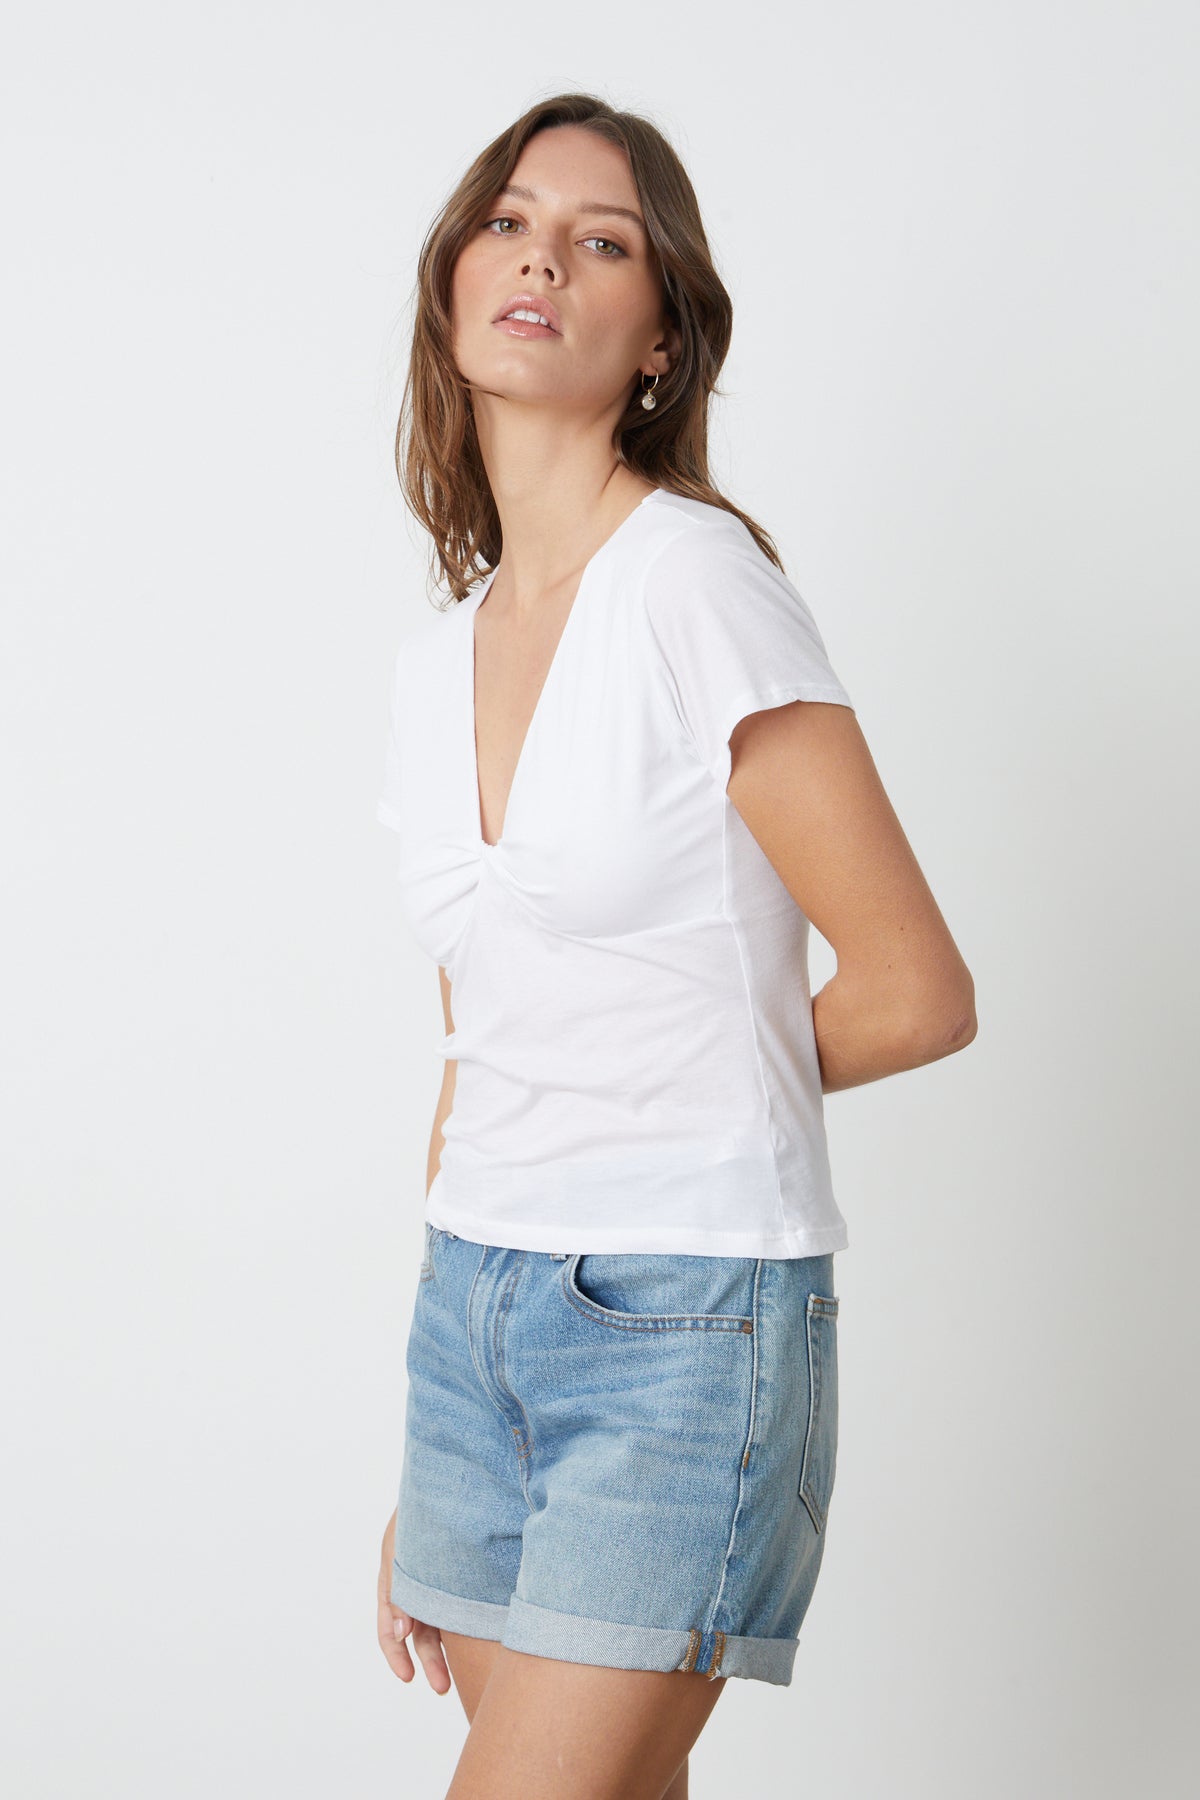 The model is wearing a white t-shirt and Velvet by Graham & Spencer's NATALIE ROLLED HEM SHORT.-26484786168001